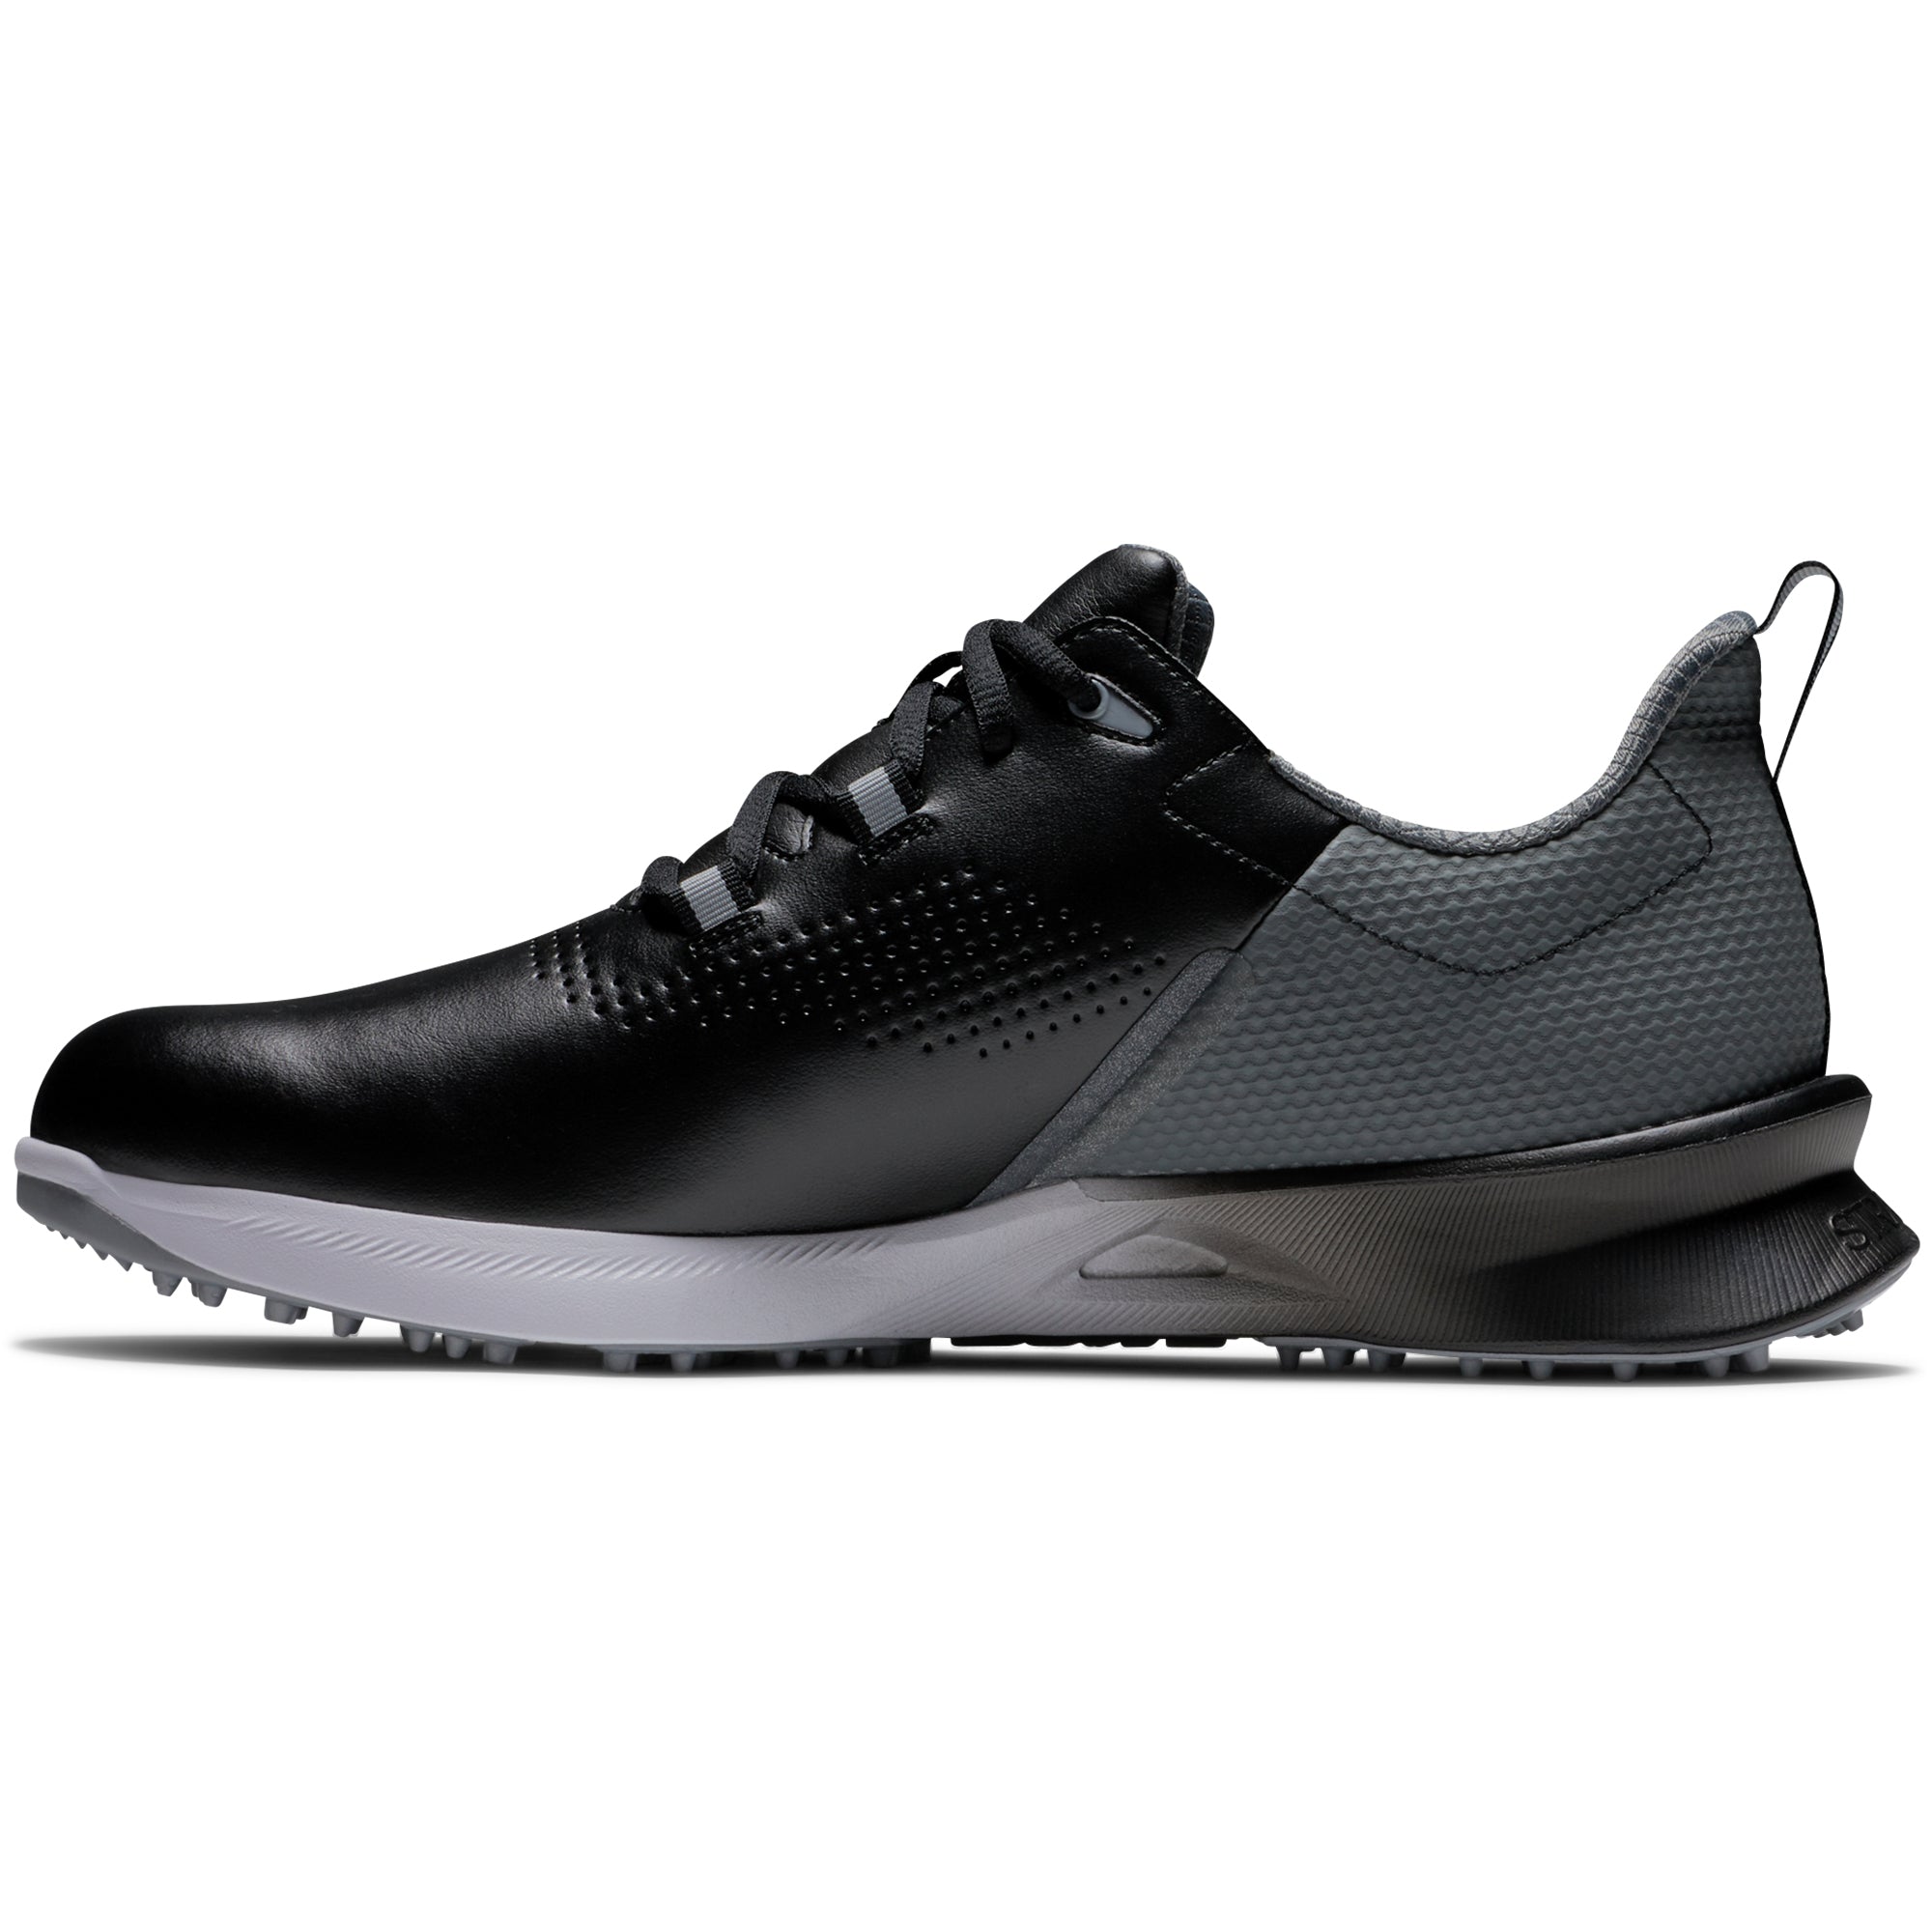 footjoy-fj-fuel-golf-shoes-55451-black